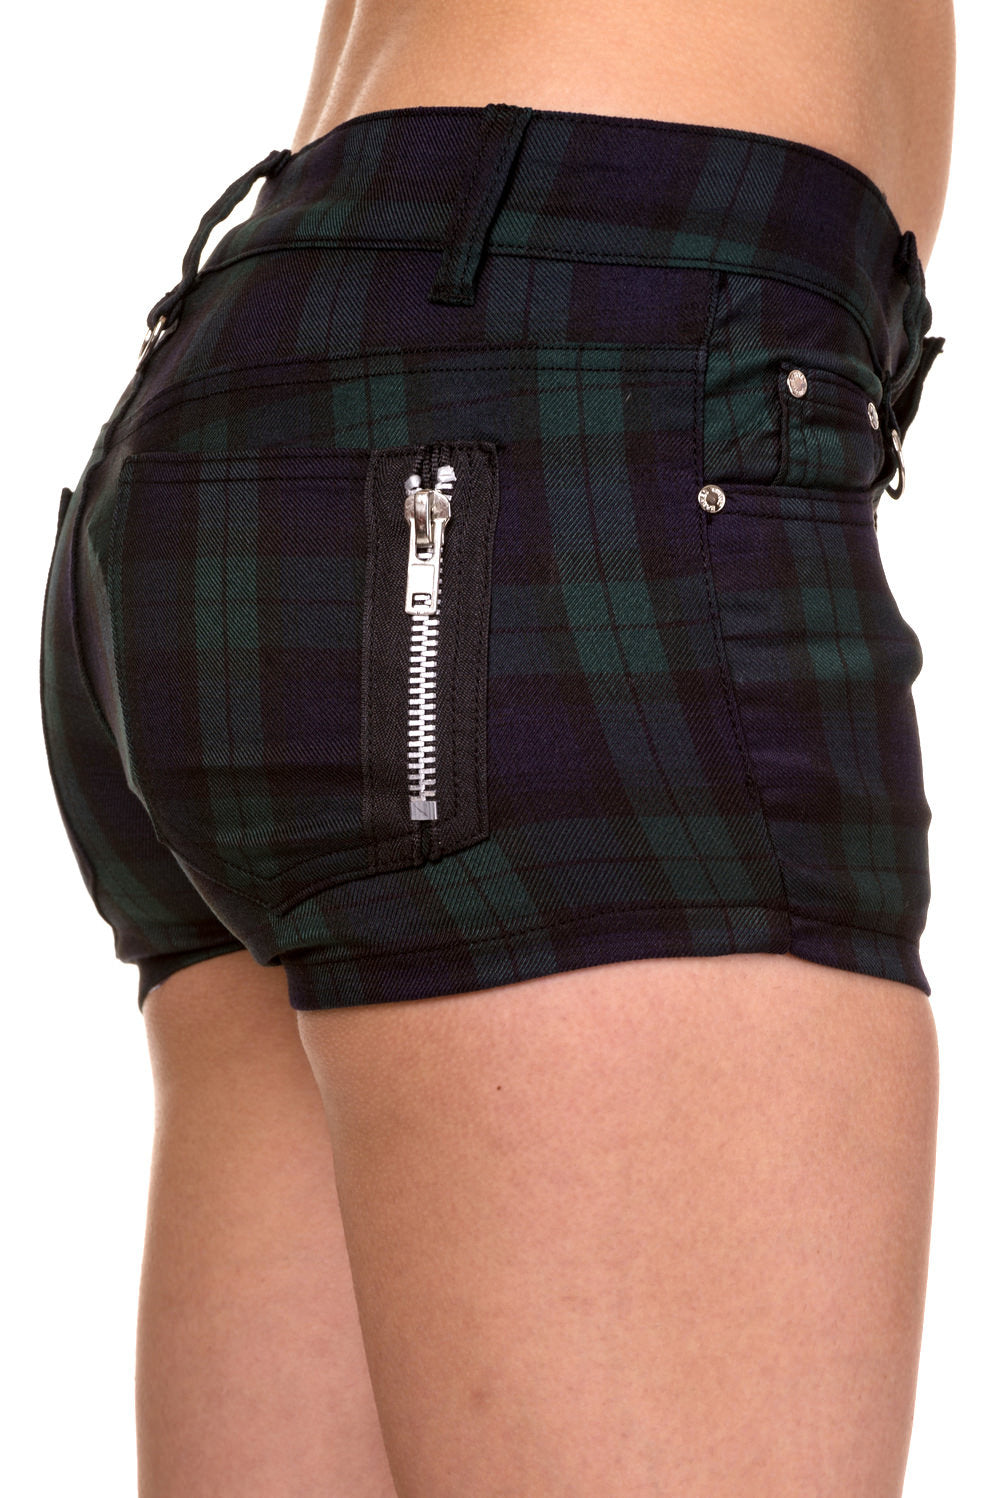 Banned Apparel Tartan Shorts | Green Tartan